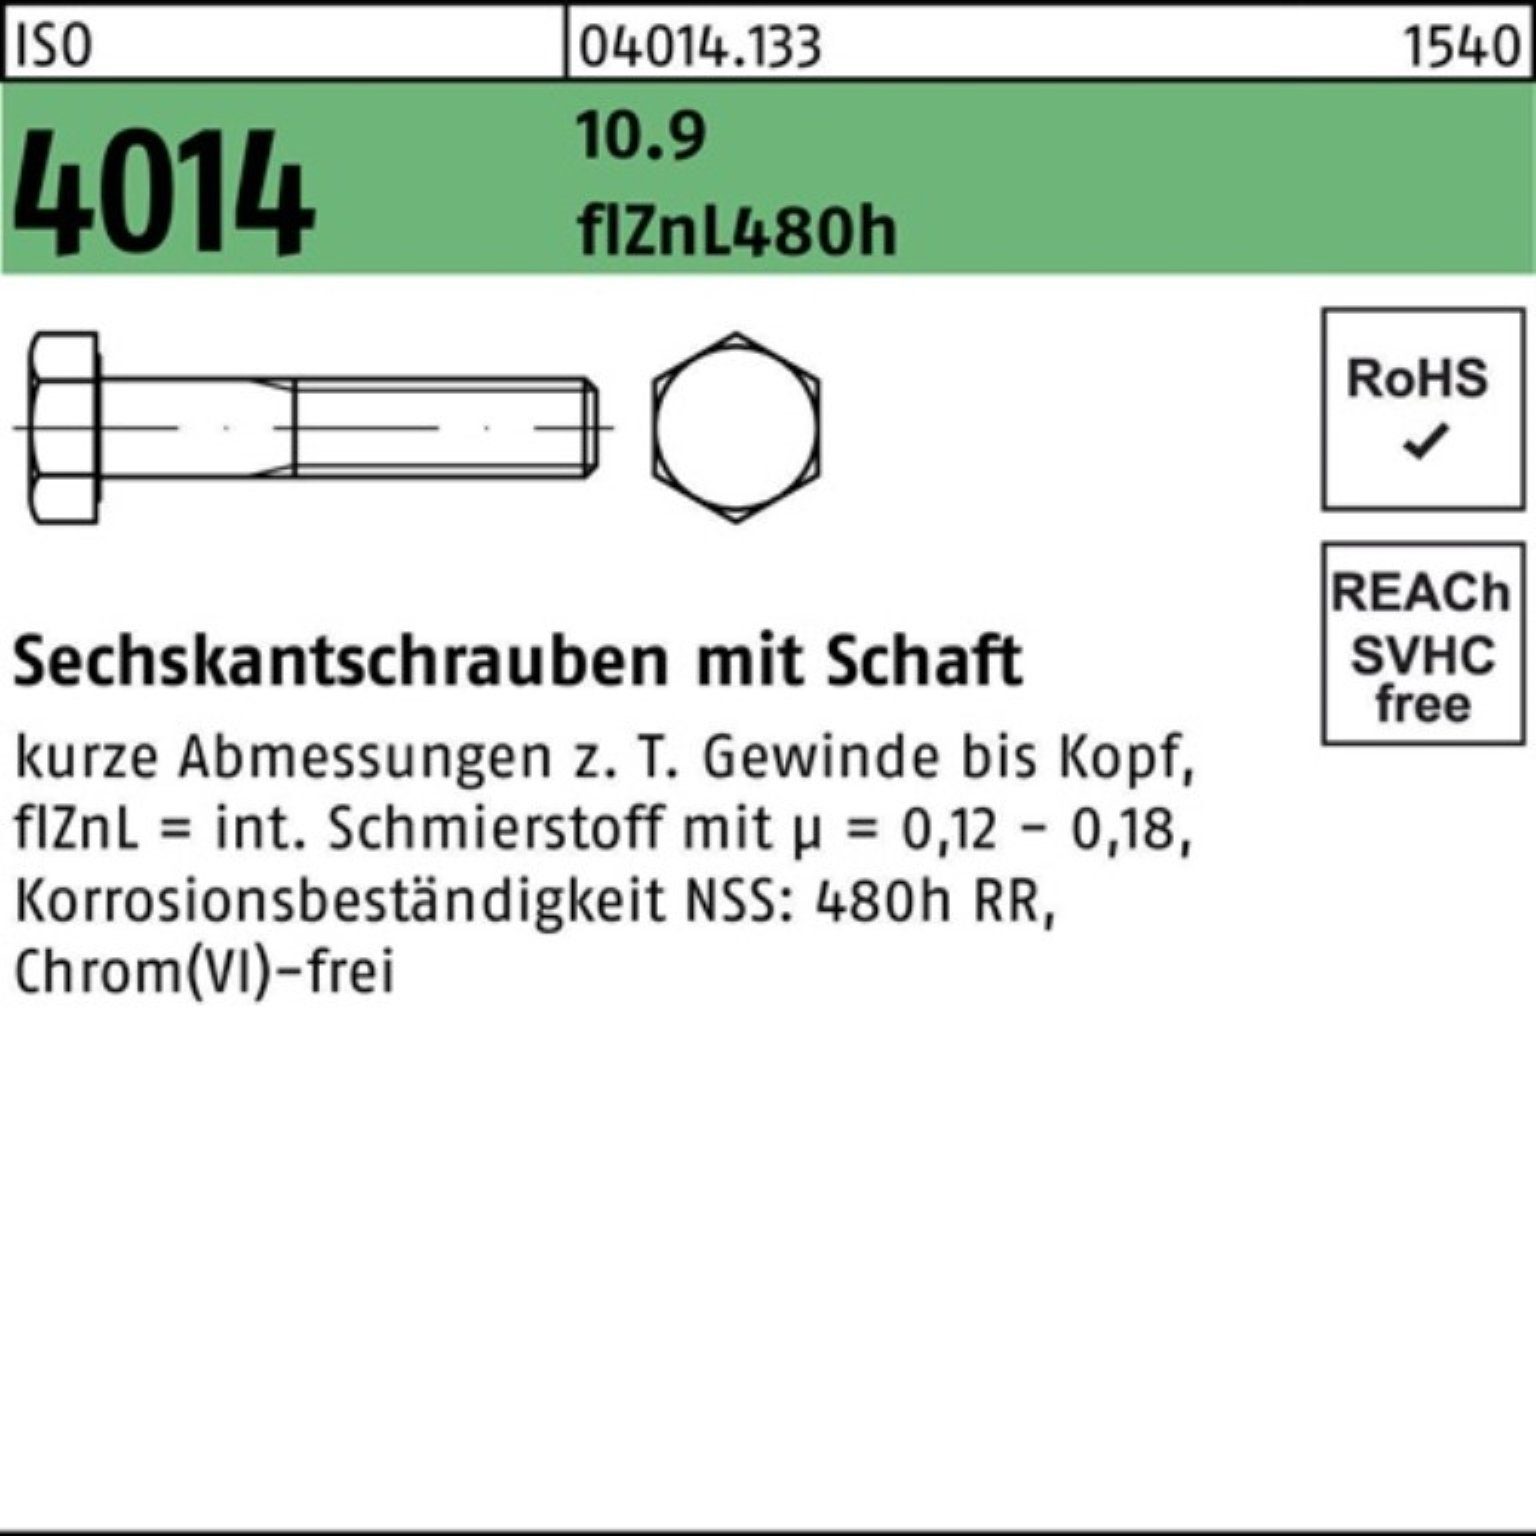 Bufab Sechskantschraube 100er 10.9 4014 zinklamellen ISO Pack Sechskantschraube M14x Schaft 55